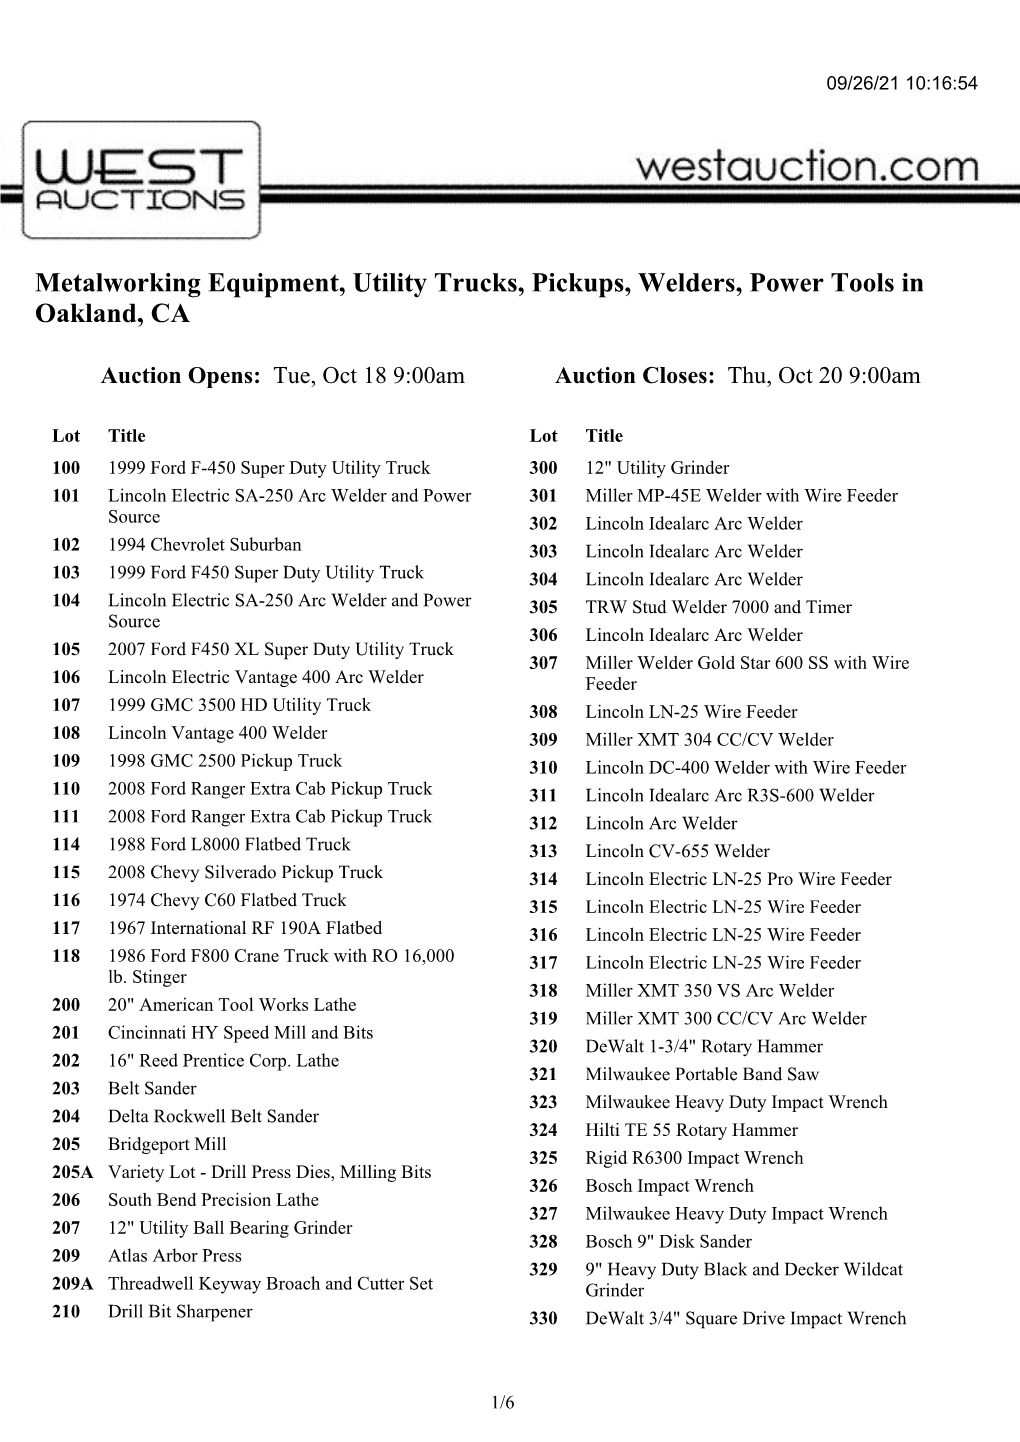 Metalworking Equipment, Utility Trucks, Pickups, Welders, Power Tools in Oakland, CA